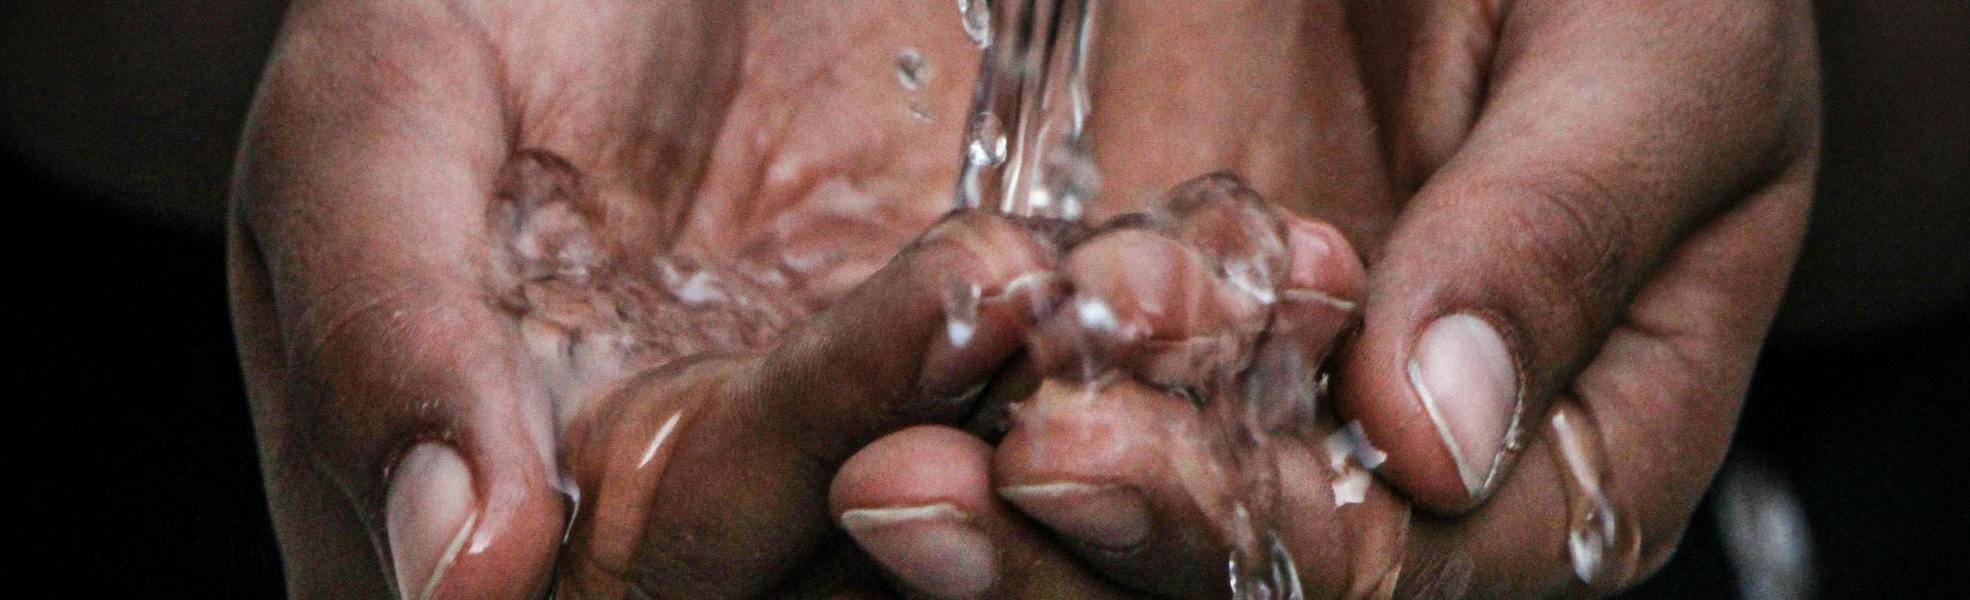 Wasser, Hygiene und Gesundhei